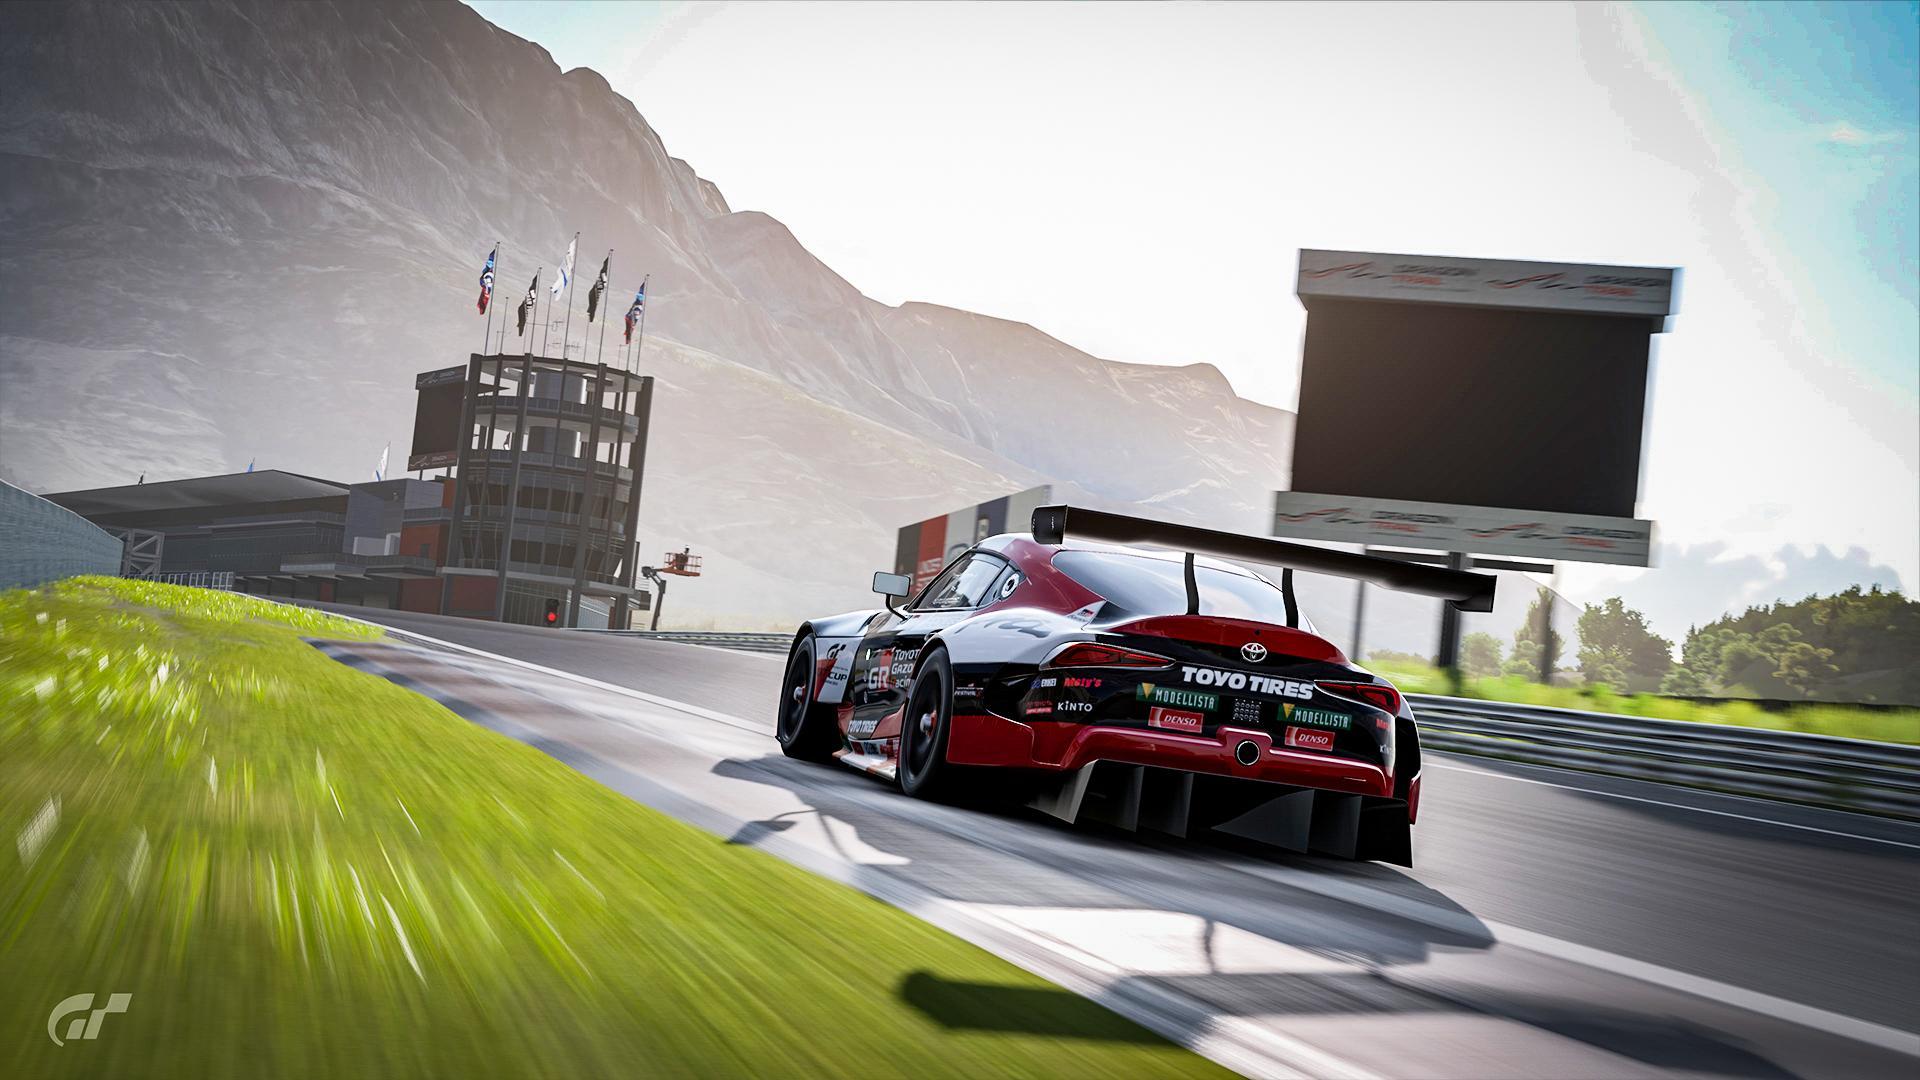  Gran Turismo: Sport - PS4 : Video Games